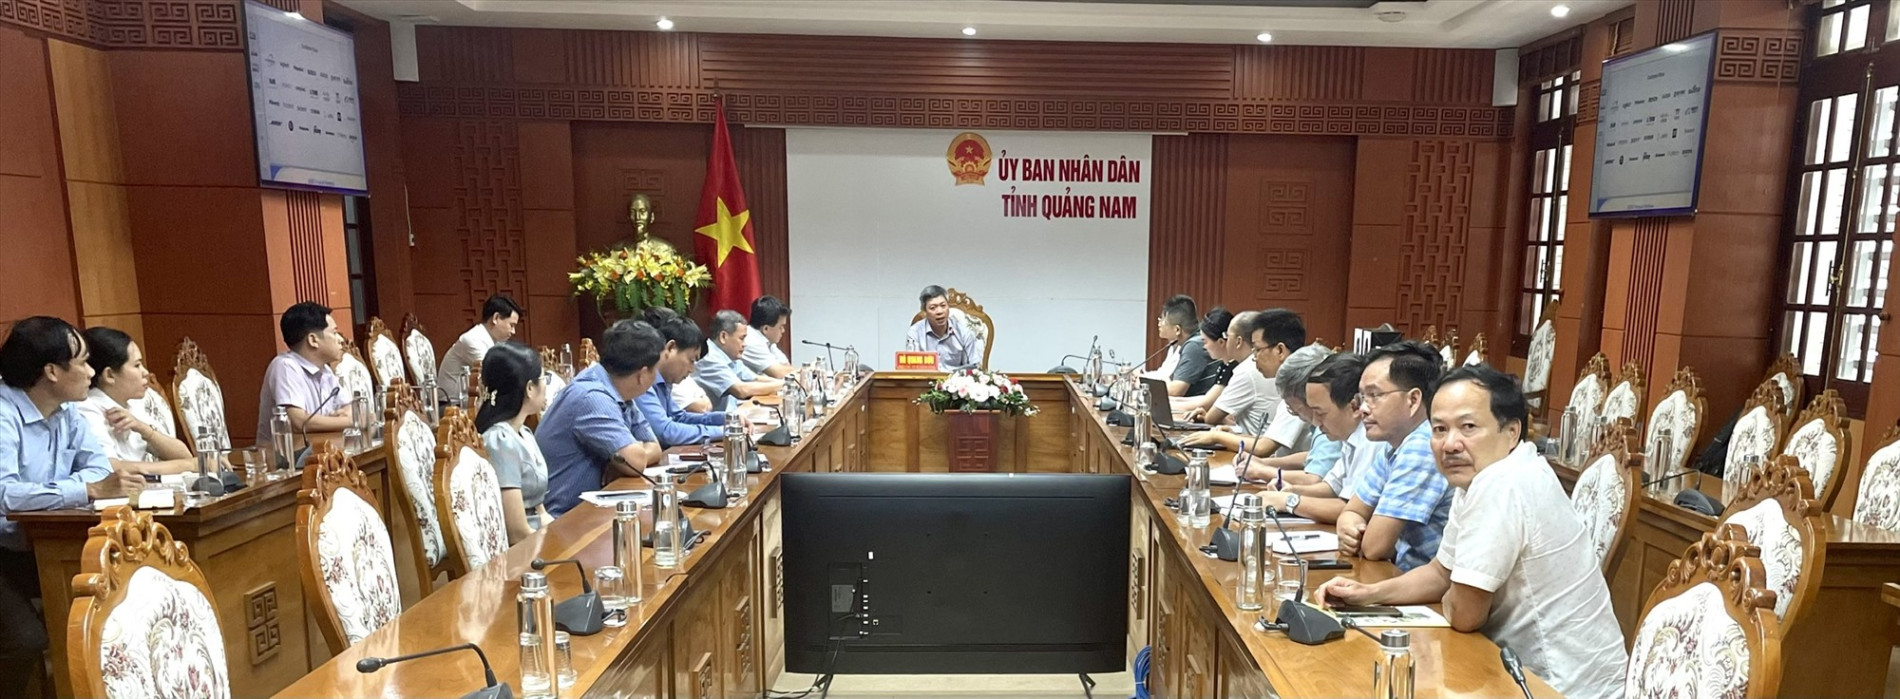 Phó Chủ tịch UBND tỉnh Hồ Quang Bửu trao đổi cùng các đại biểu tham dự buổi làm việc. Ảnh:N.P